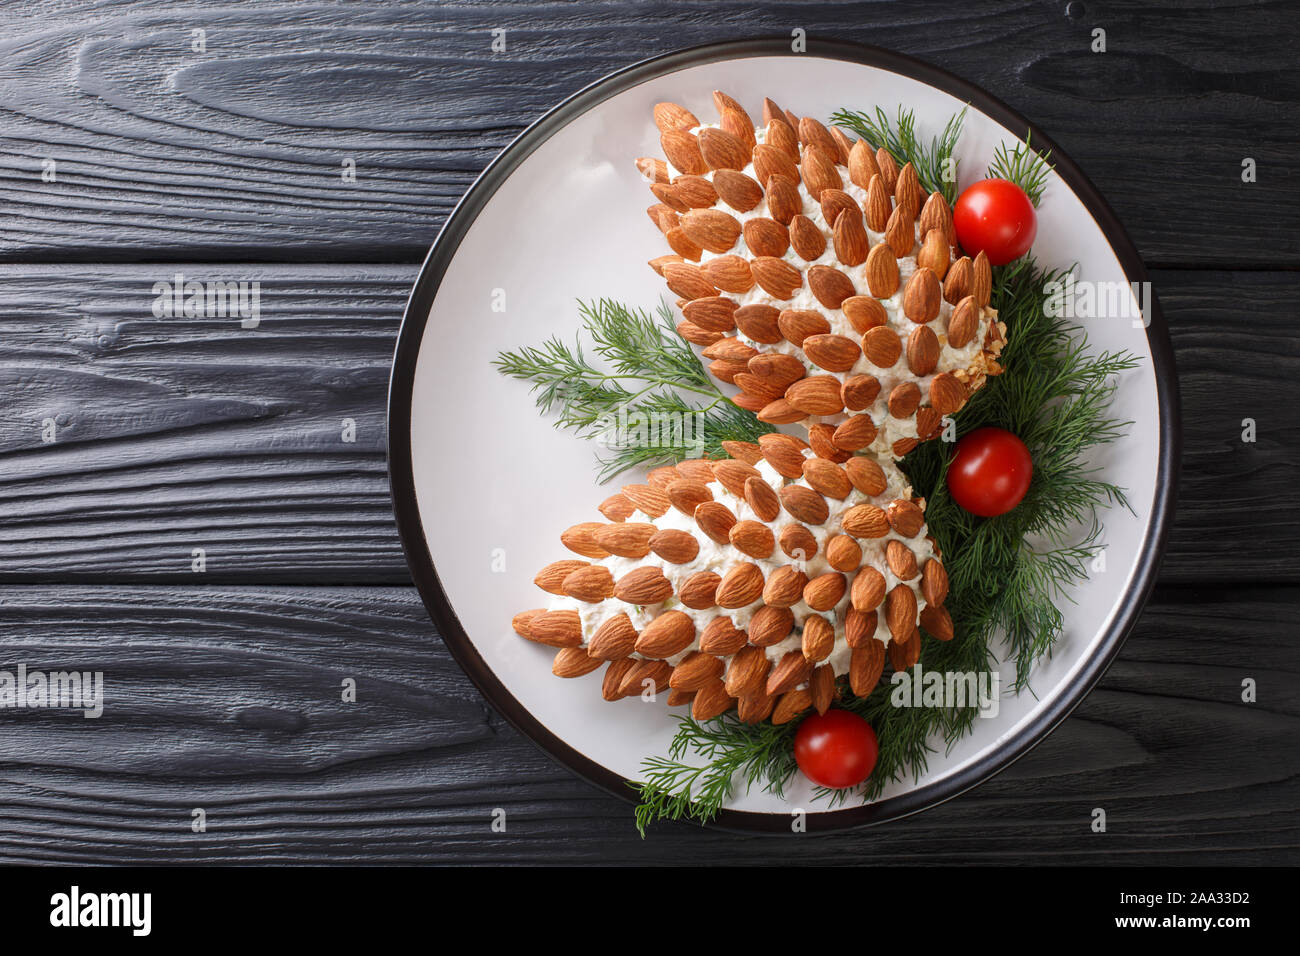 Inverno insalata formaggio antipasto con mandorle in forma di coni di pino close-up su una piastra sul tavolo. Parte superiore orizzontale vista da sopra Foto Stock